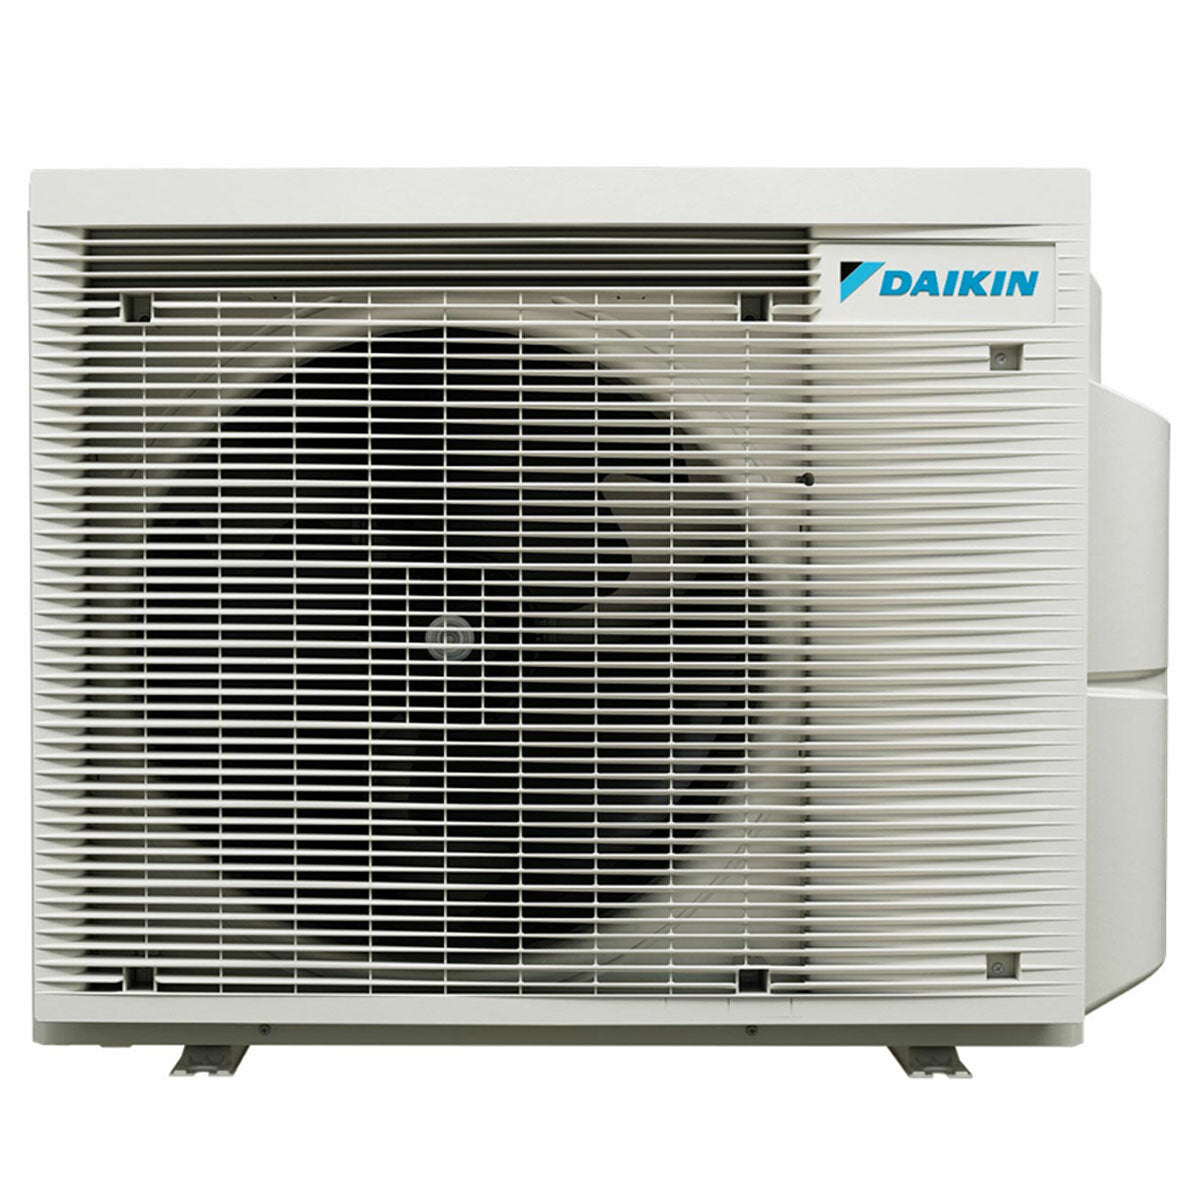 Daikin Emura 3 trial split air conditioner 7000+9000+9000 BTU inverter A++ wifi outdoor unit 4 kW Silver